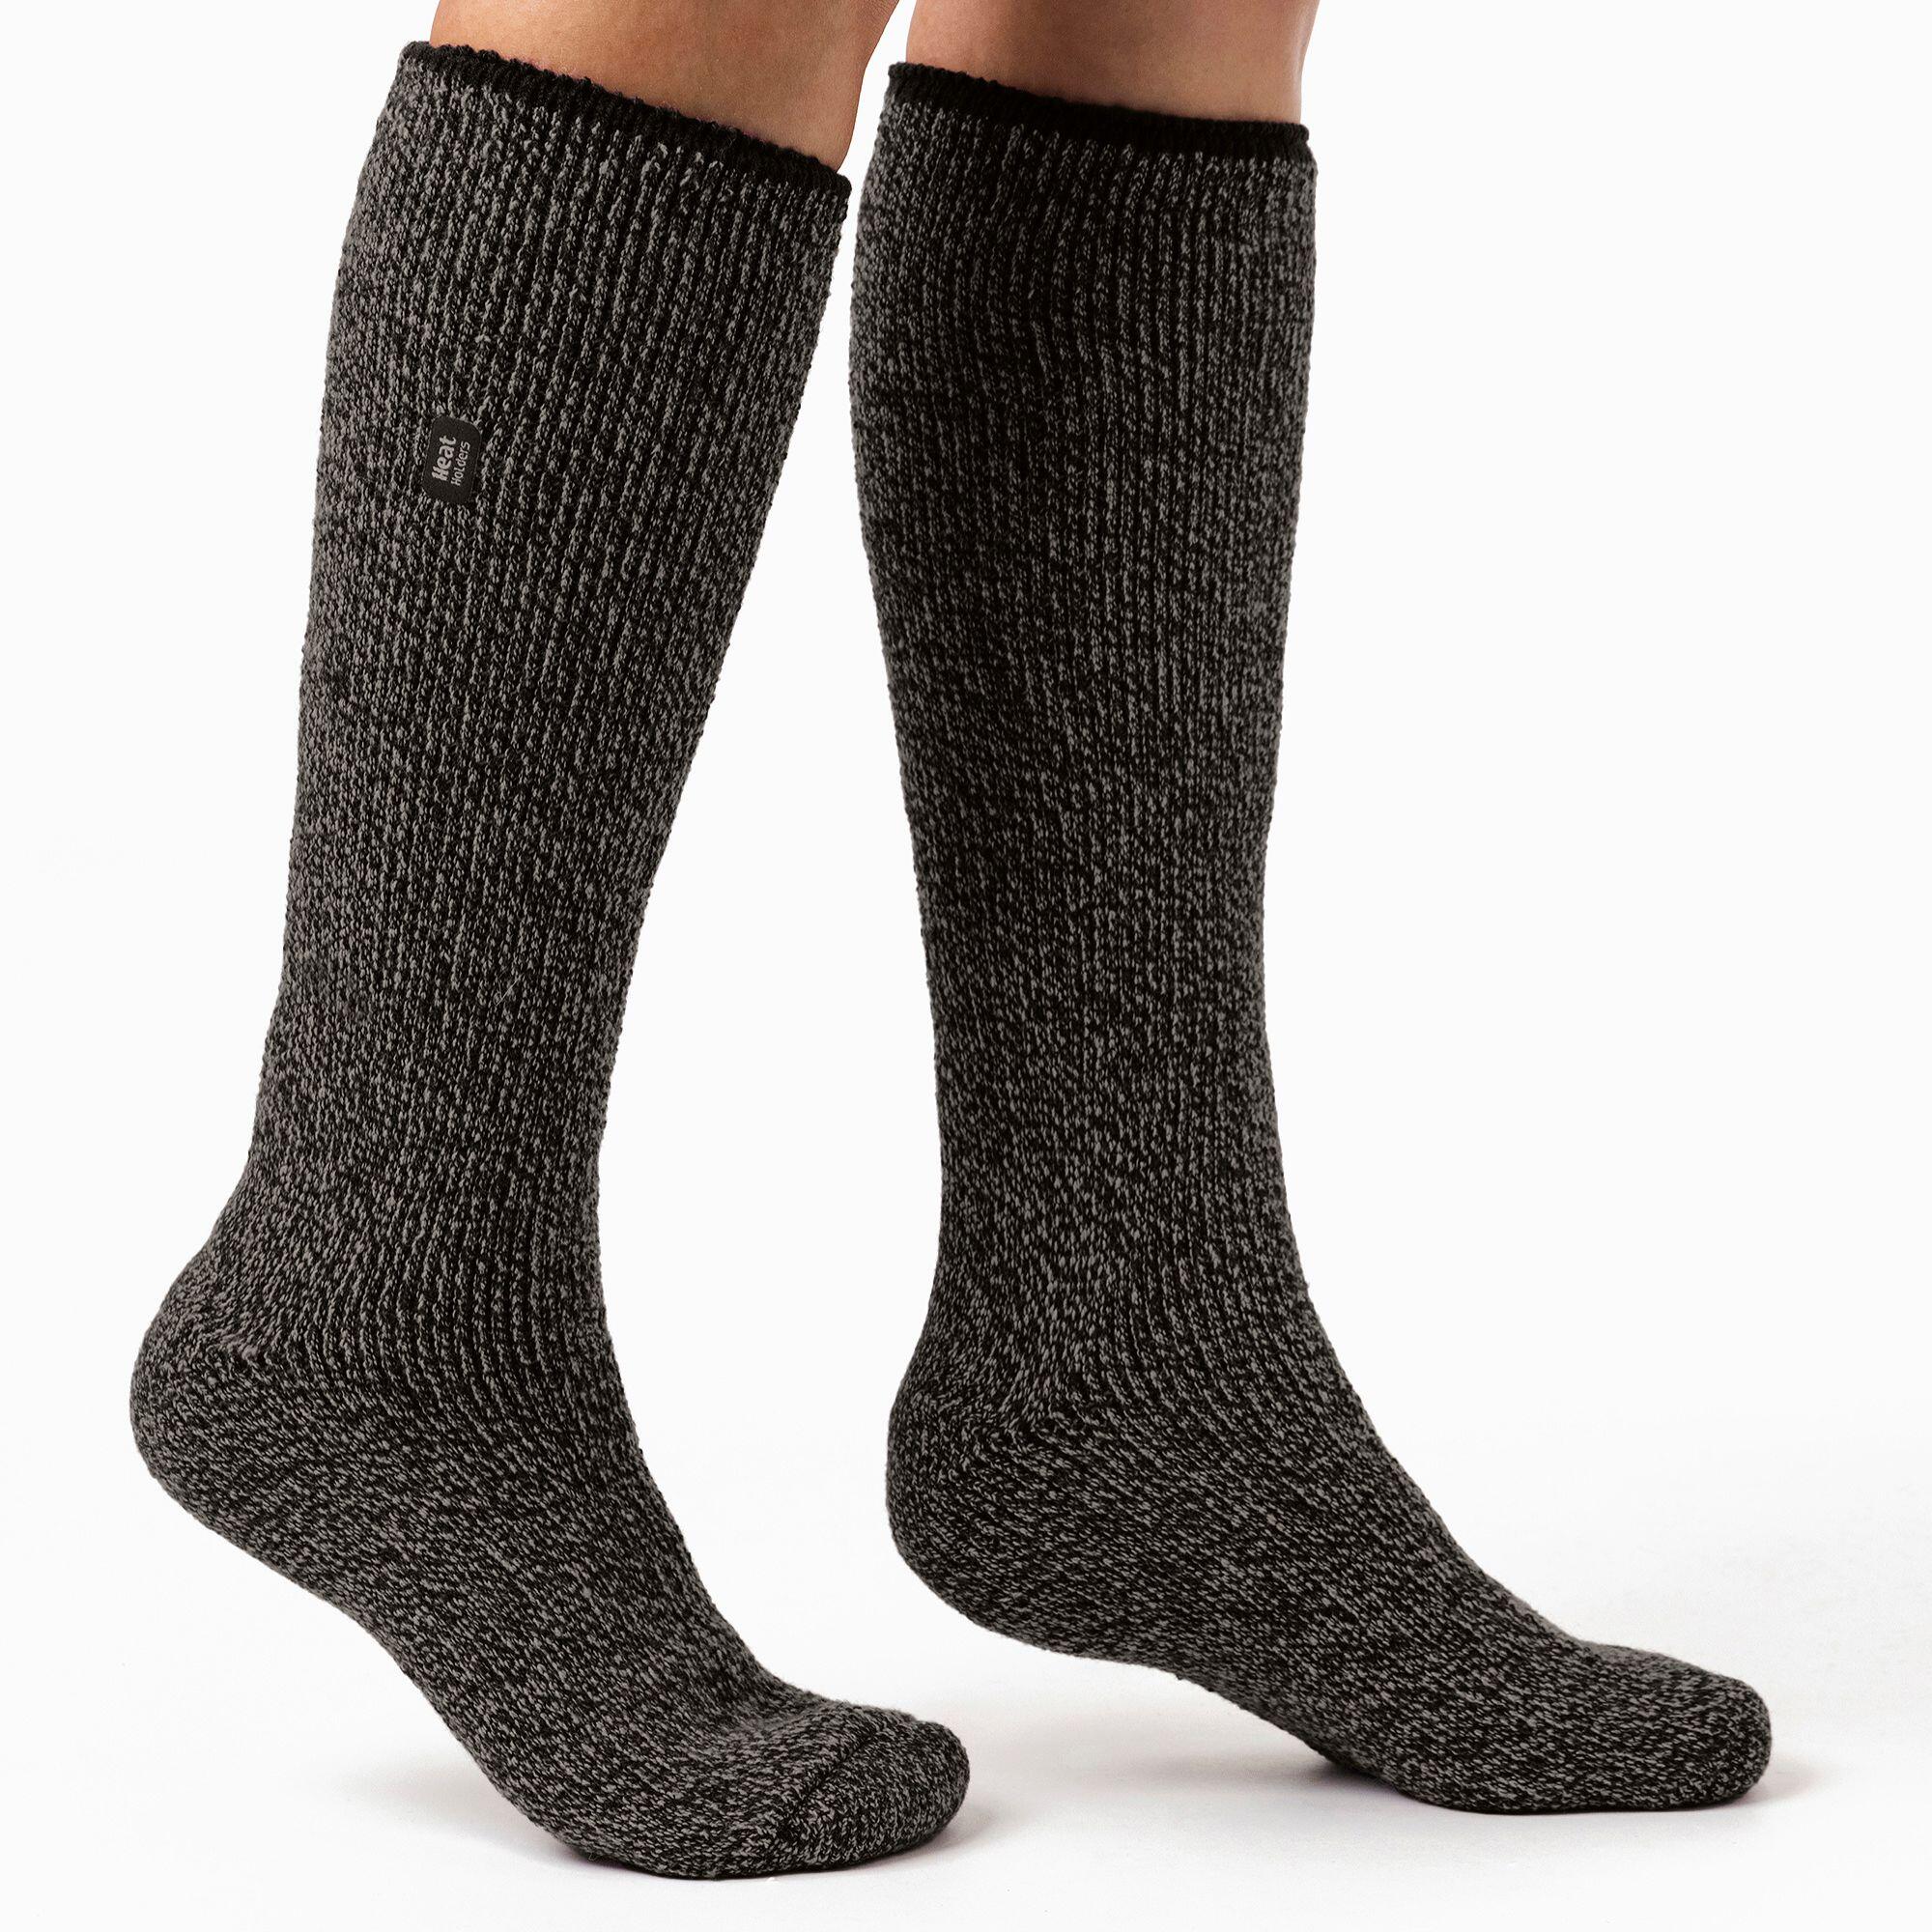 Ladies Outdoor Merino Wool Knee High Long Thermal Socks for Winter 4/7